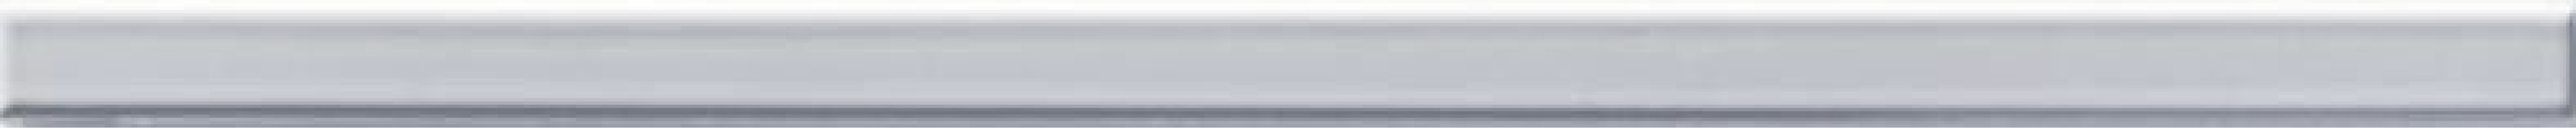 Бордюр Rako Extra светло-серый 2x40 WLRMG723